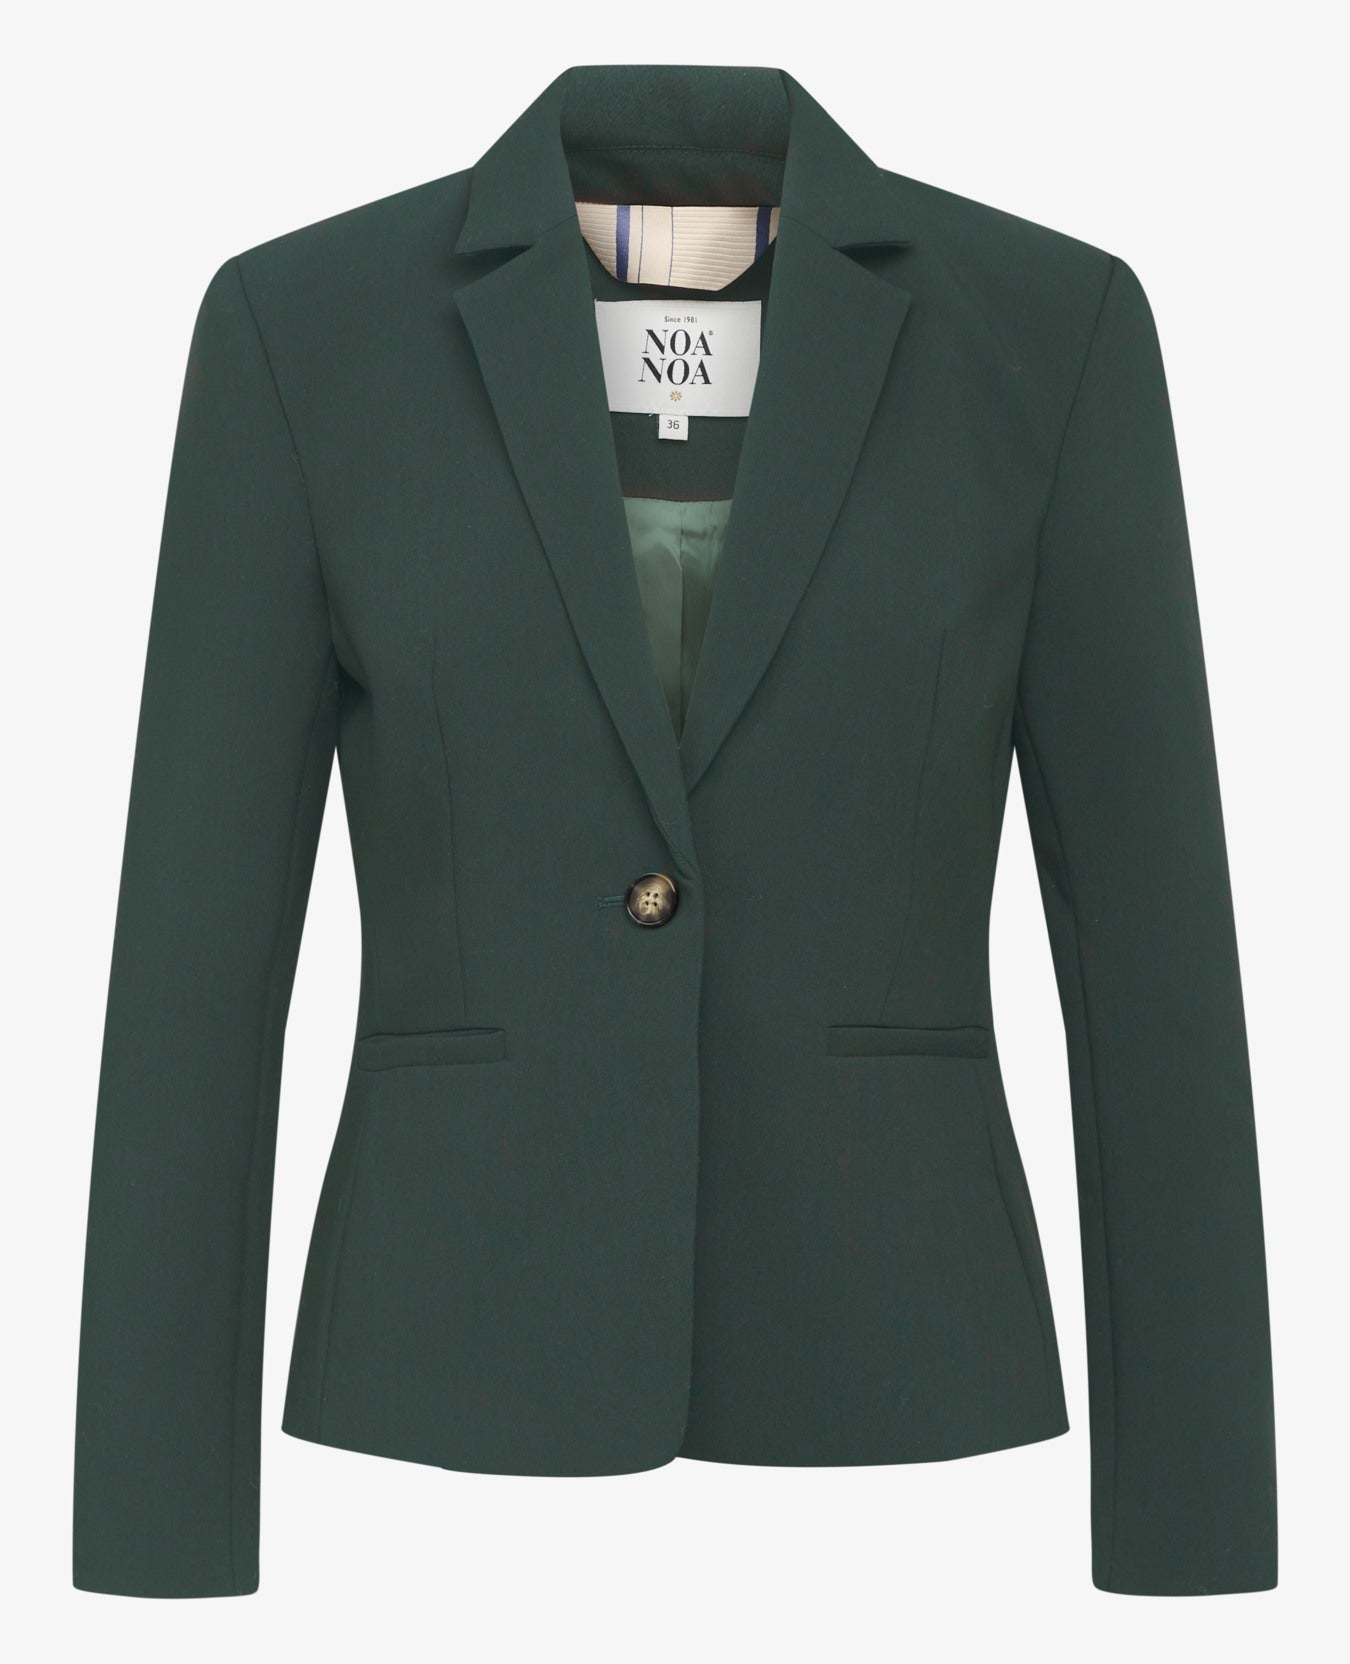 Noa Noa Felicia Suit Jacket - Green